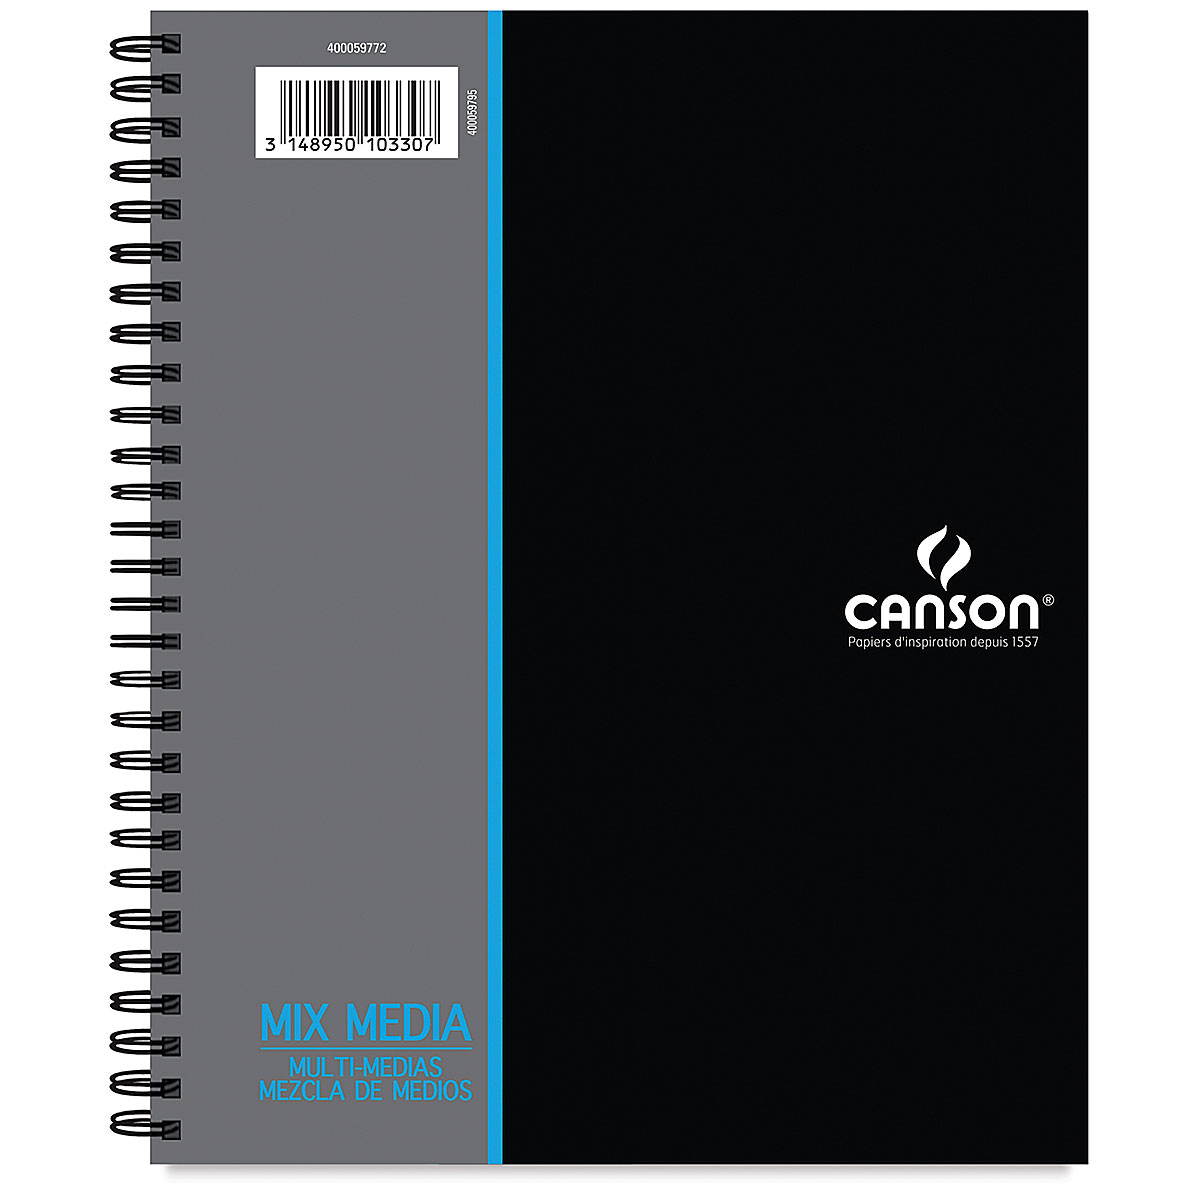 Canson Artist Series Hardbound Sketch Book, 5.5 x 8.5